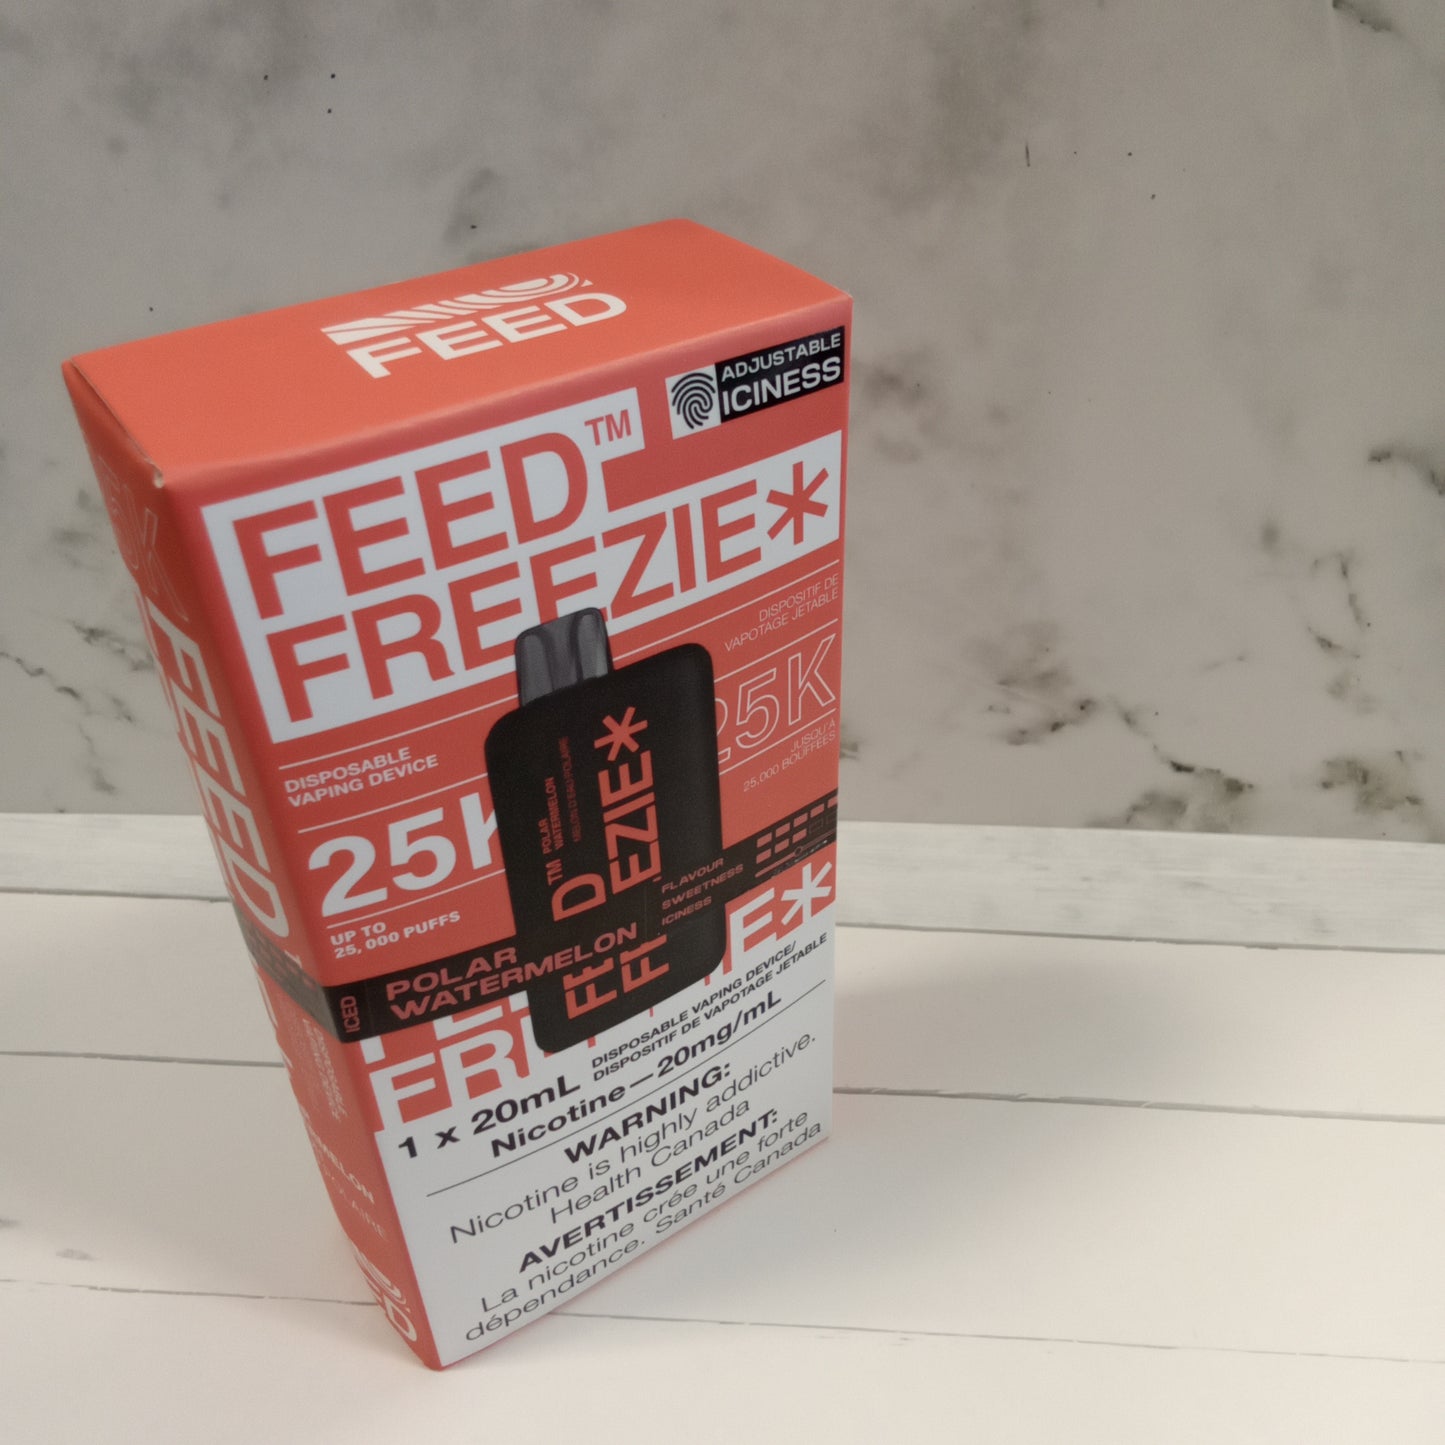 Feed freezie 25k